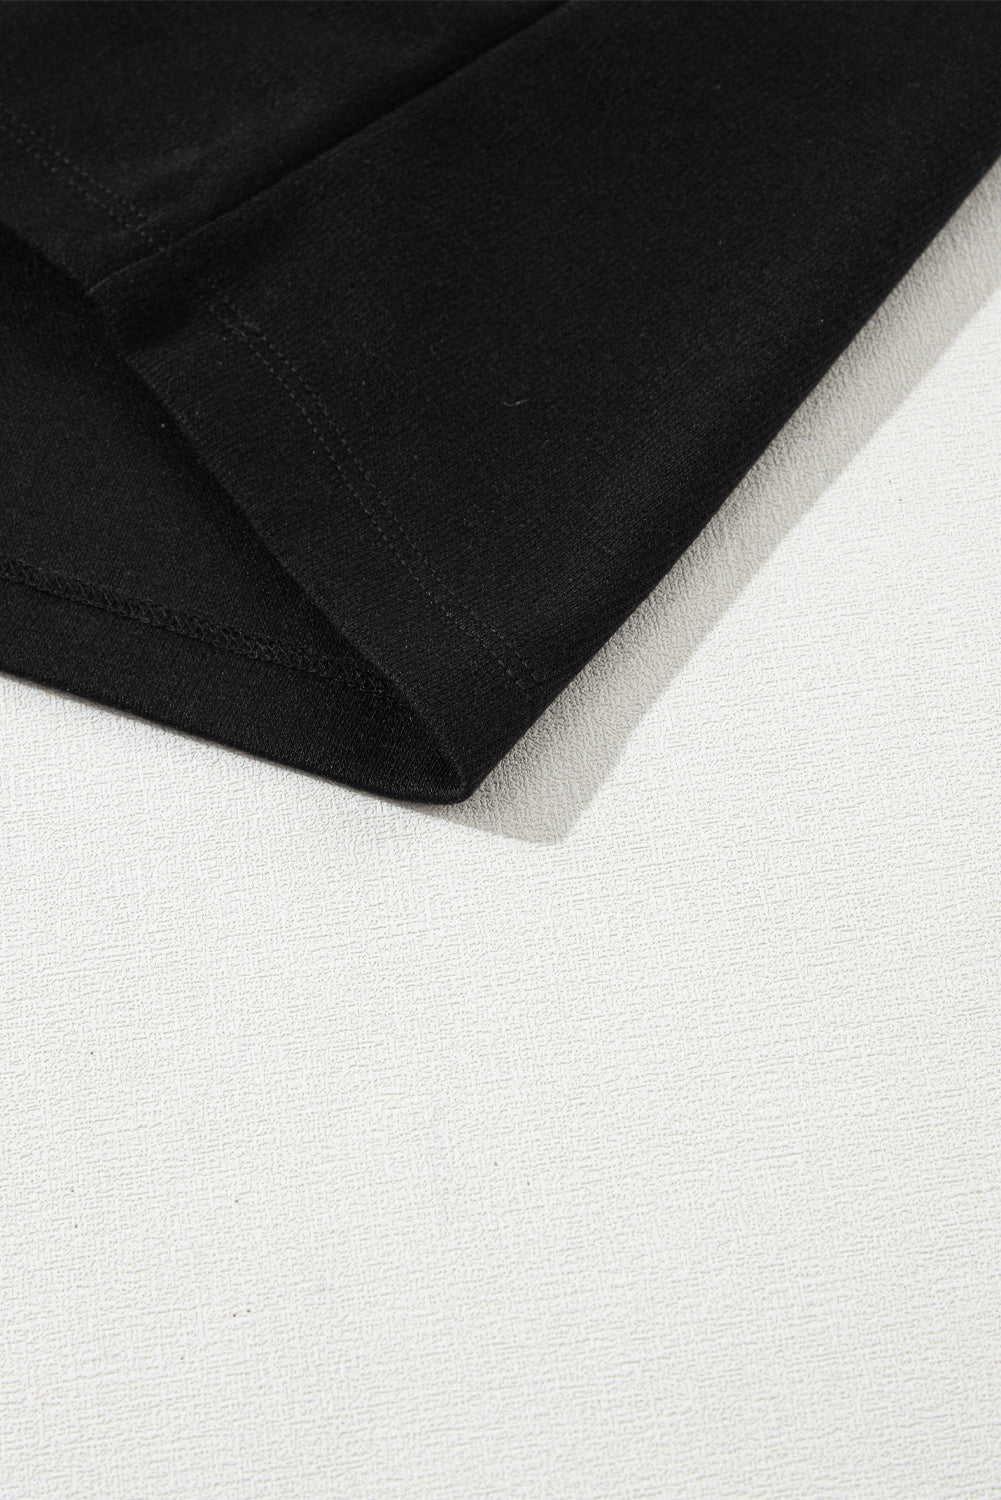 Schwarzes T-Shirt mit 3/4-Ärmeln und Rundhalsausschnitt mit Perlendekor